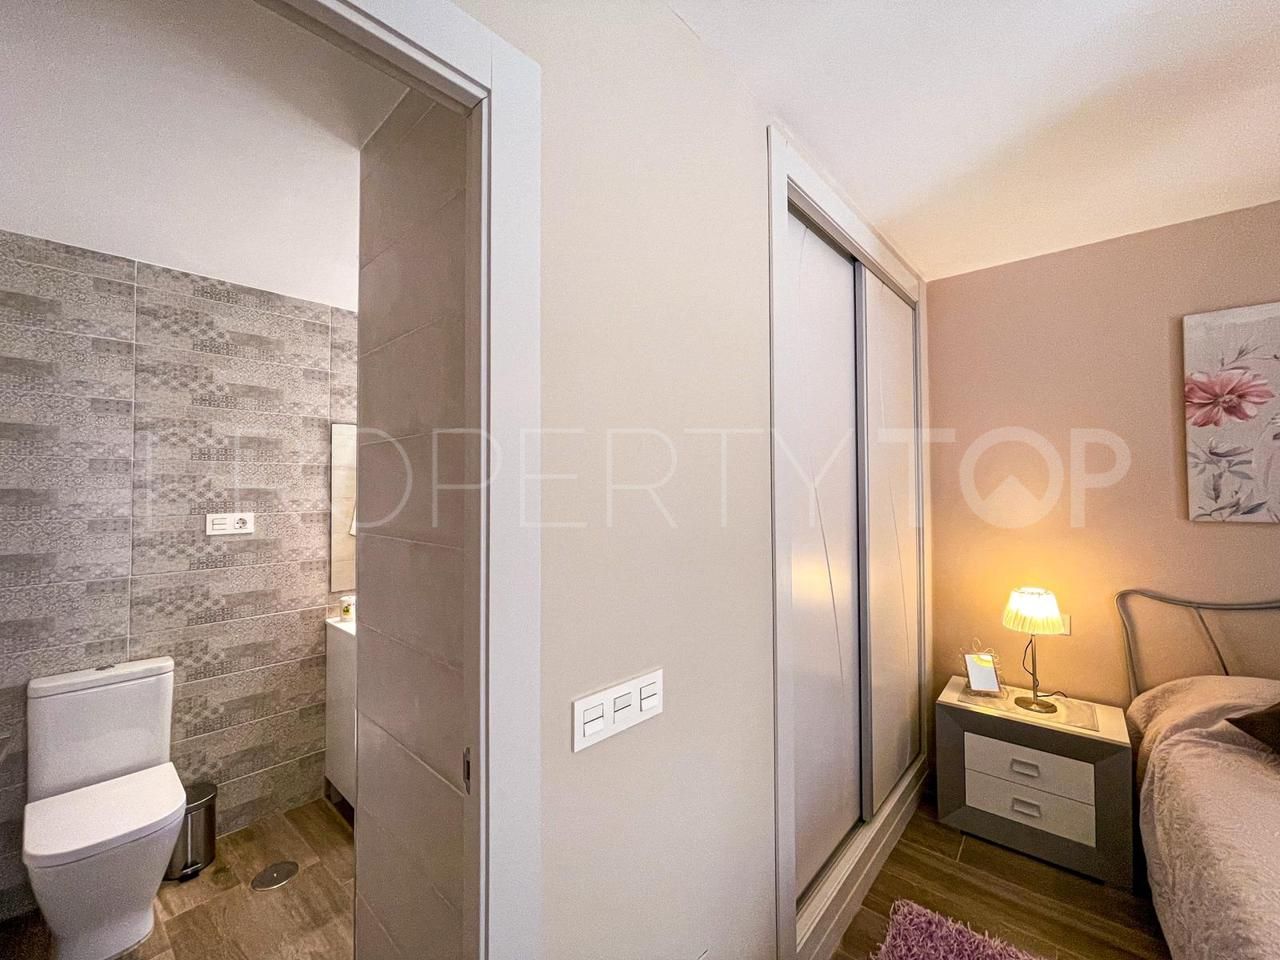 1 bedroom flat in Torremolinos for sale